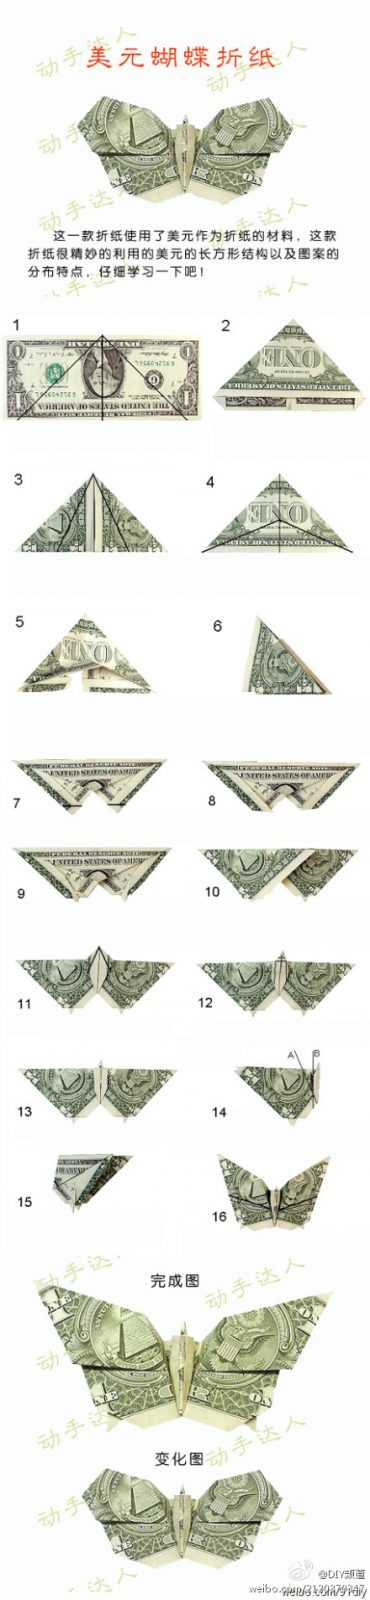 Мастер-класс: как сделать оригами из денег своими руками